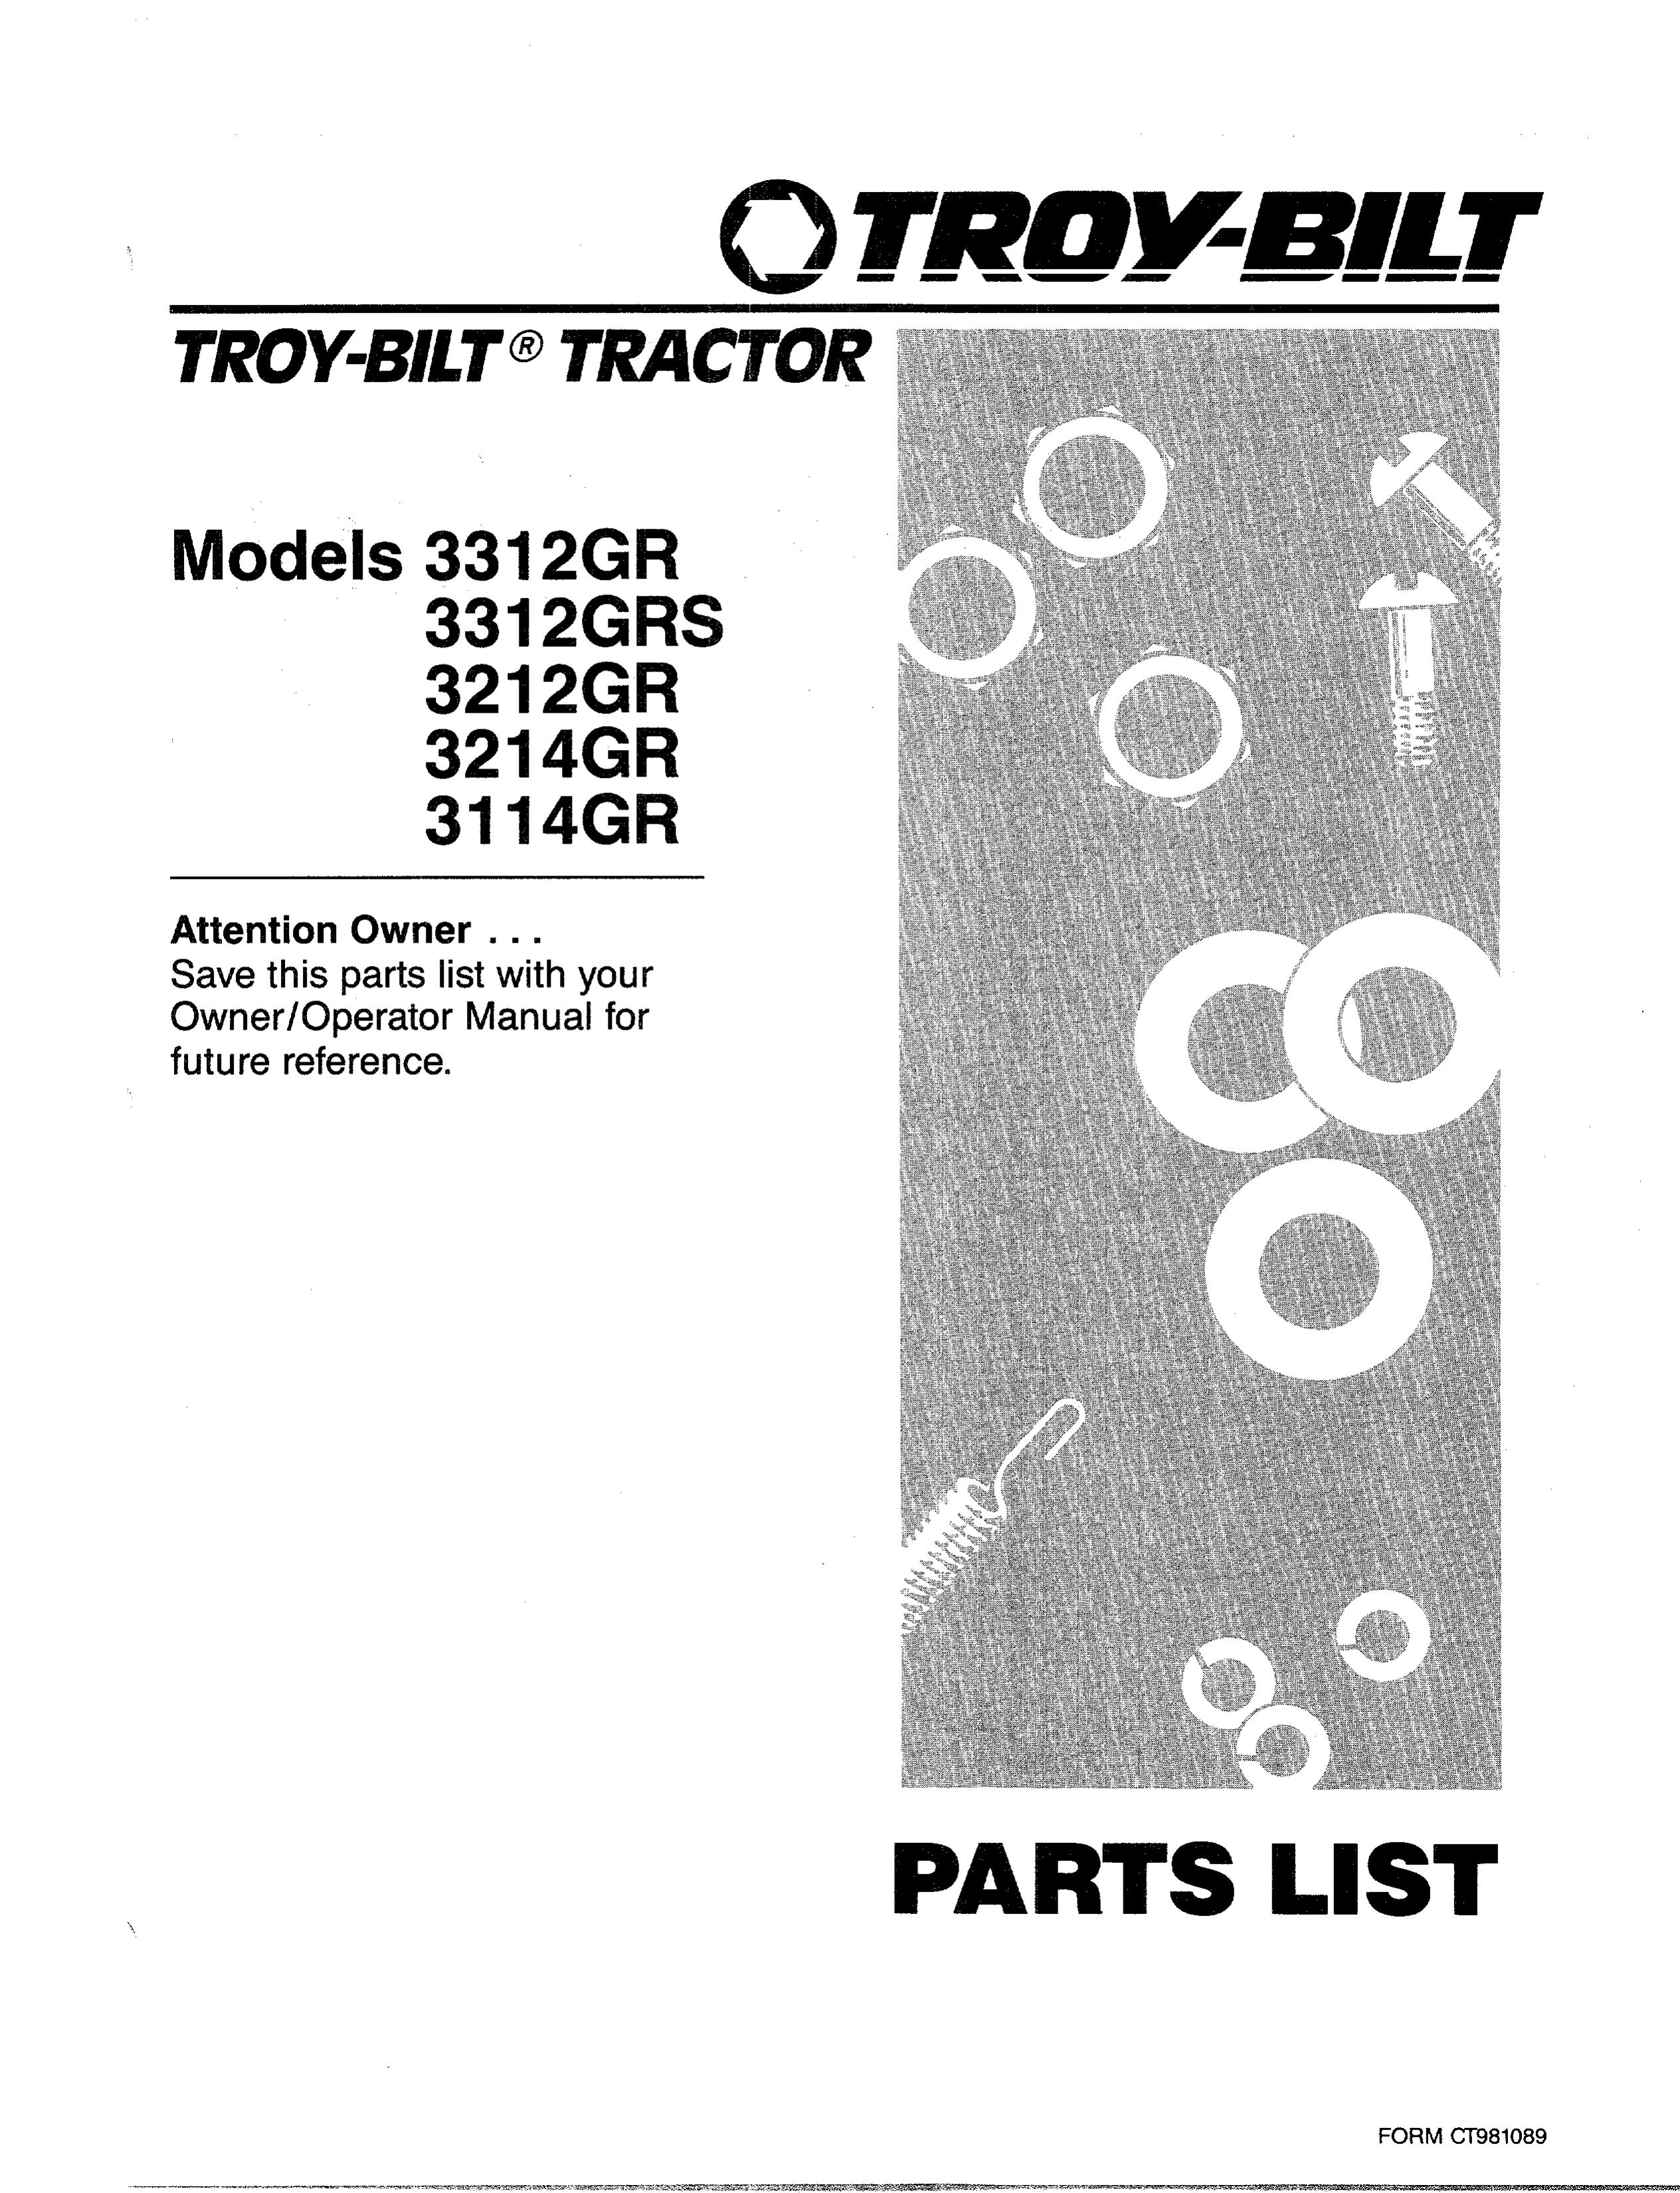 Troy-Bilt 3214GR Lawn Mower User Manual